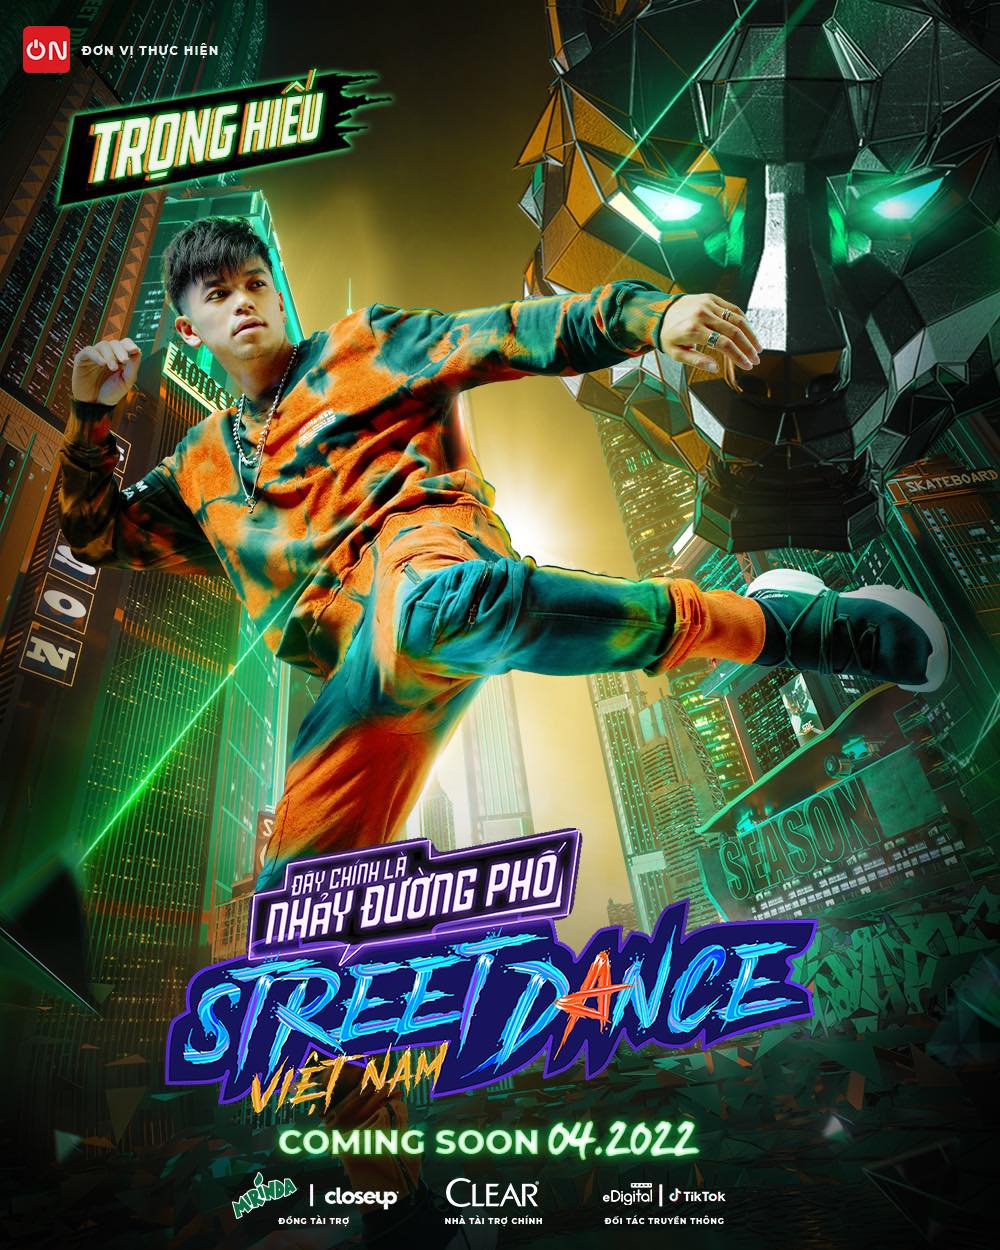 Trọng Hiếu xác nhận tham gia cuộc thi 'Street Dance Việt Nam - Đây chính là nhảy đường phố' với tư cách HLV - nhóm trưởng